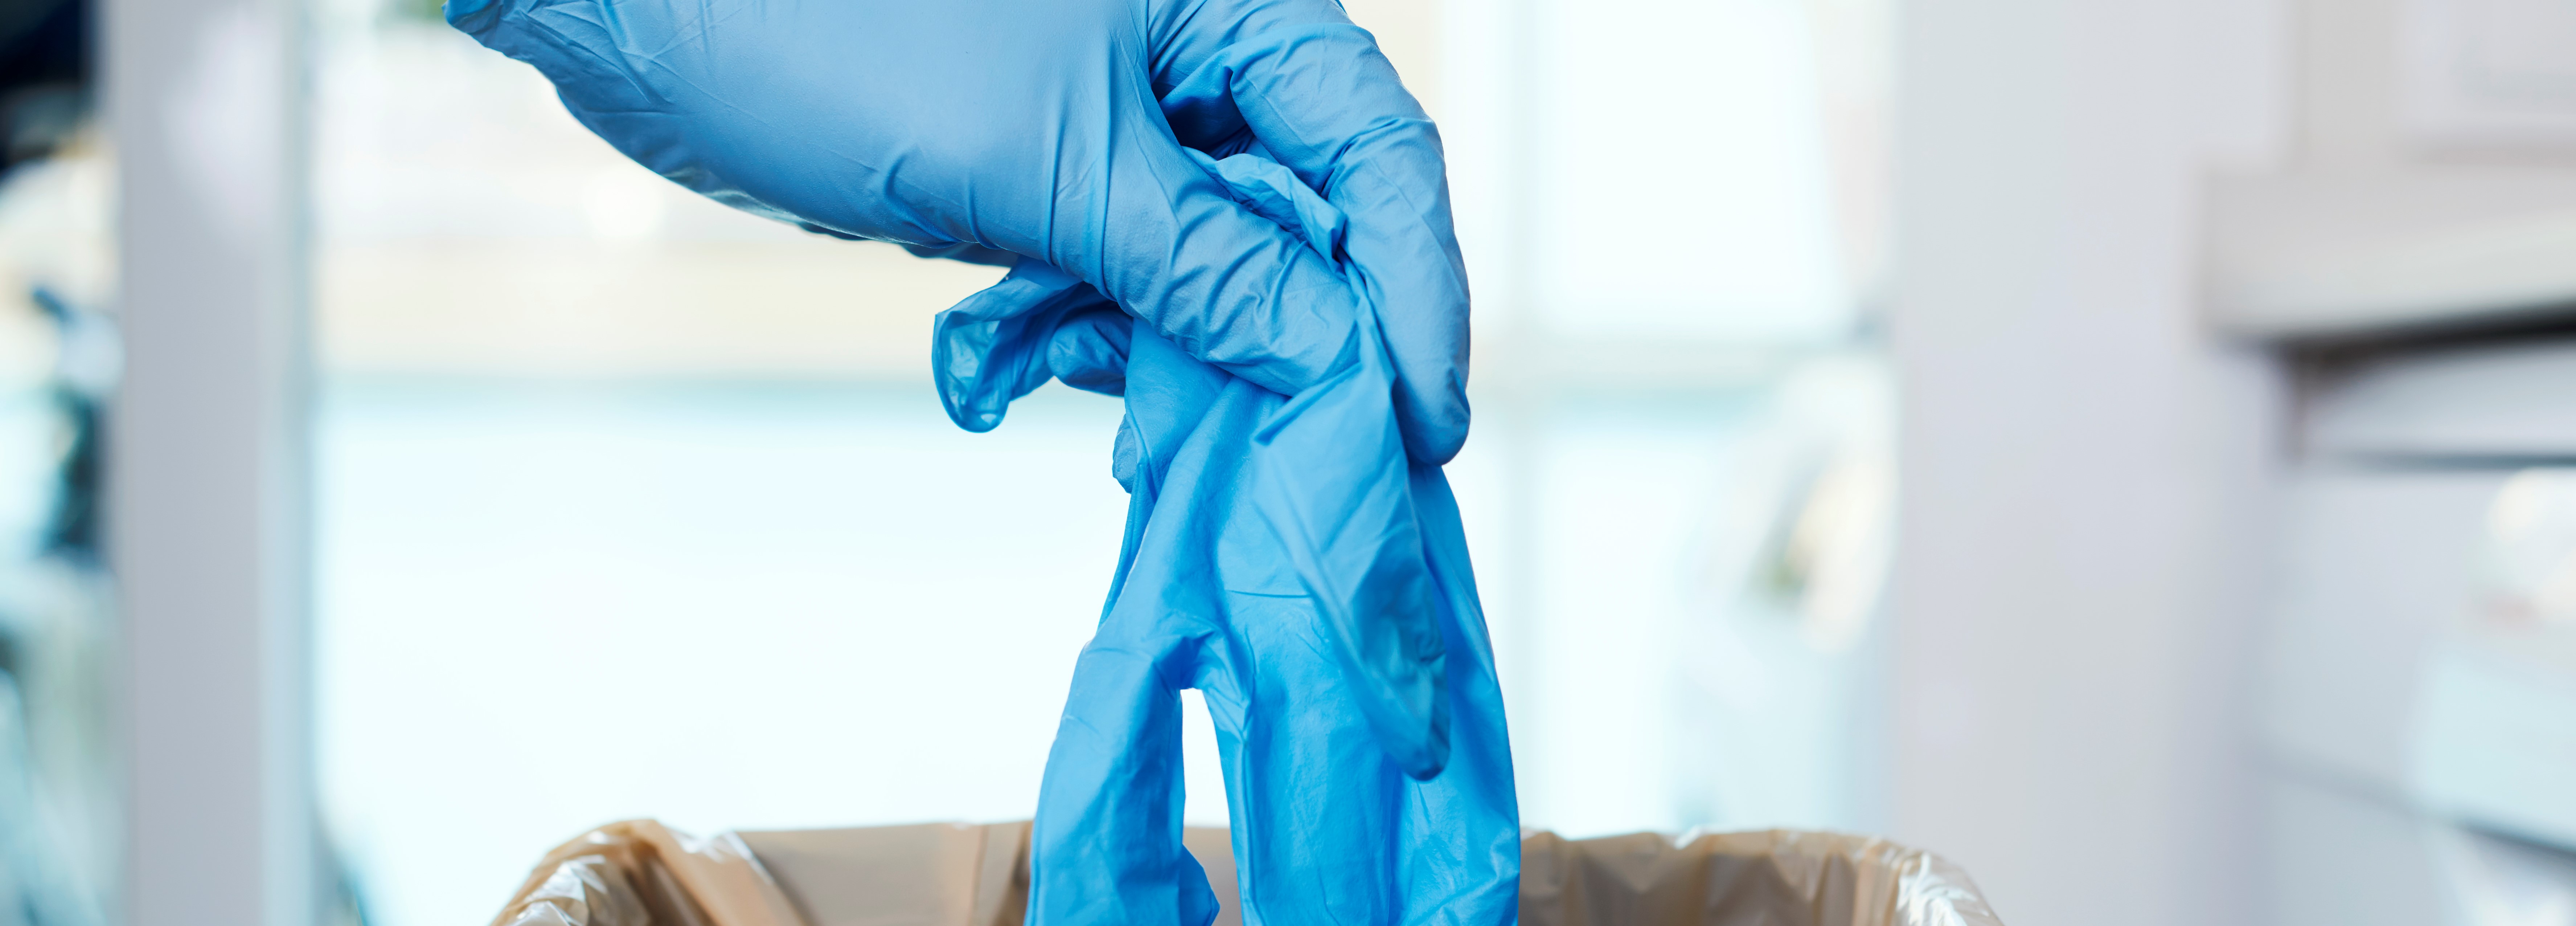 Das Bild zeigt eine Hand mit einem blauen medizinischen Handschuh an, welche einen anderen dieser Handschuhe in einen Mülleimer wirft.